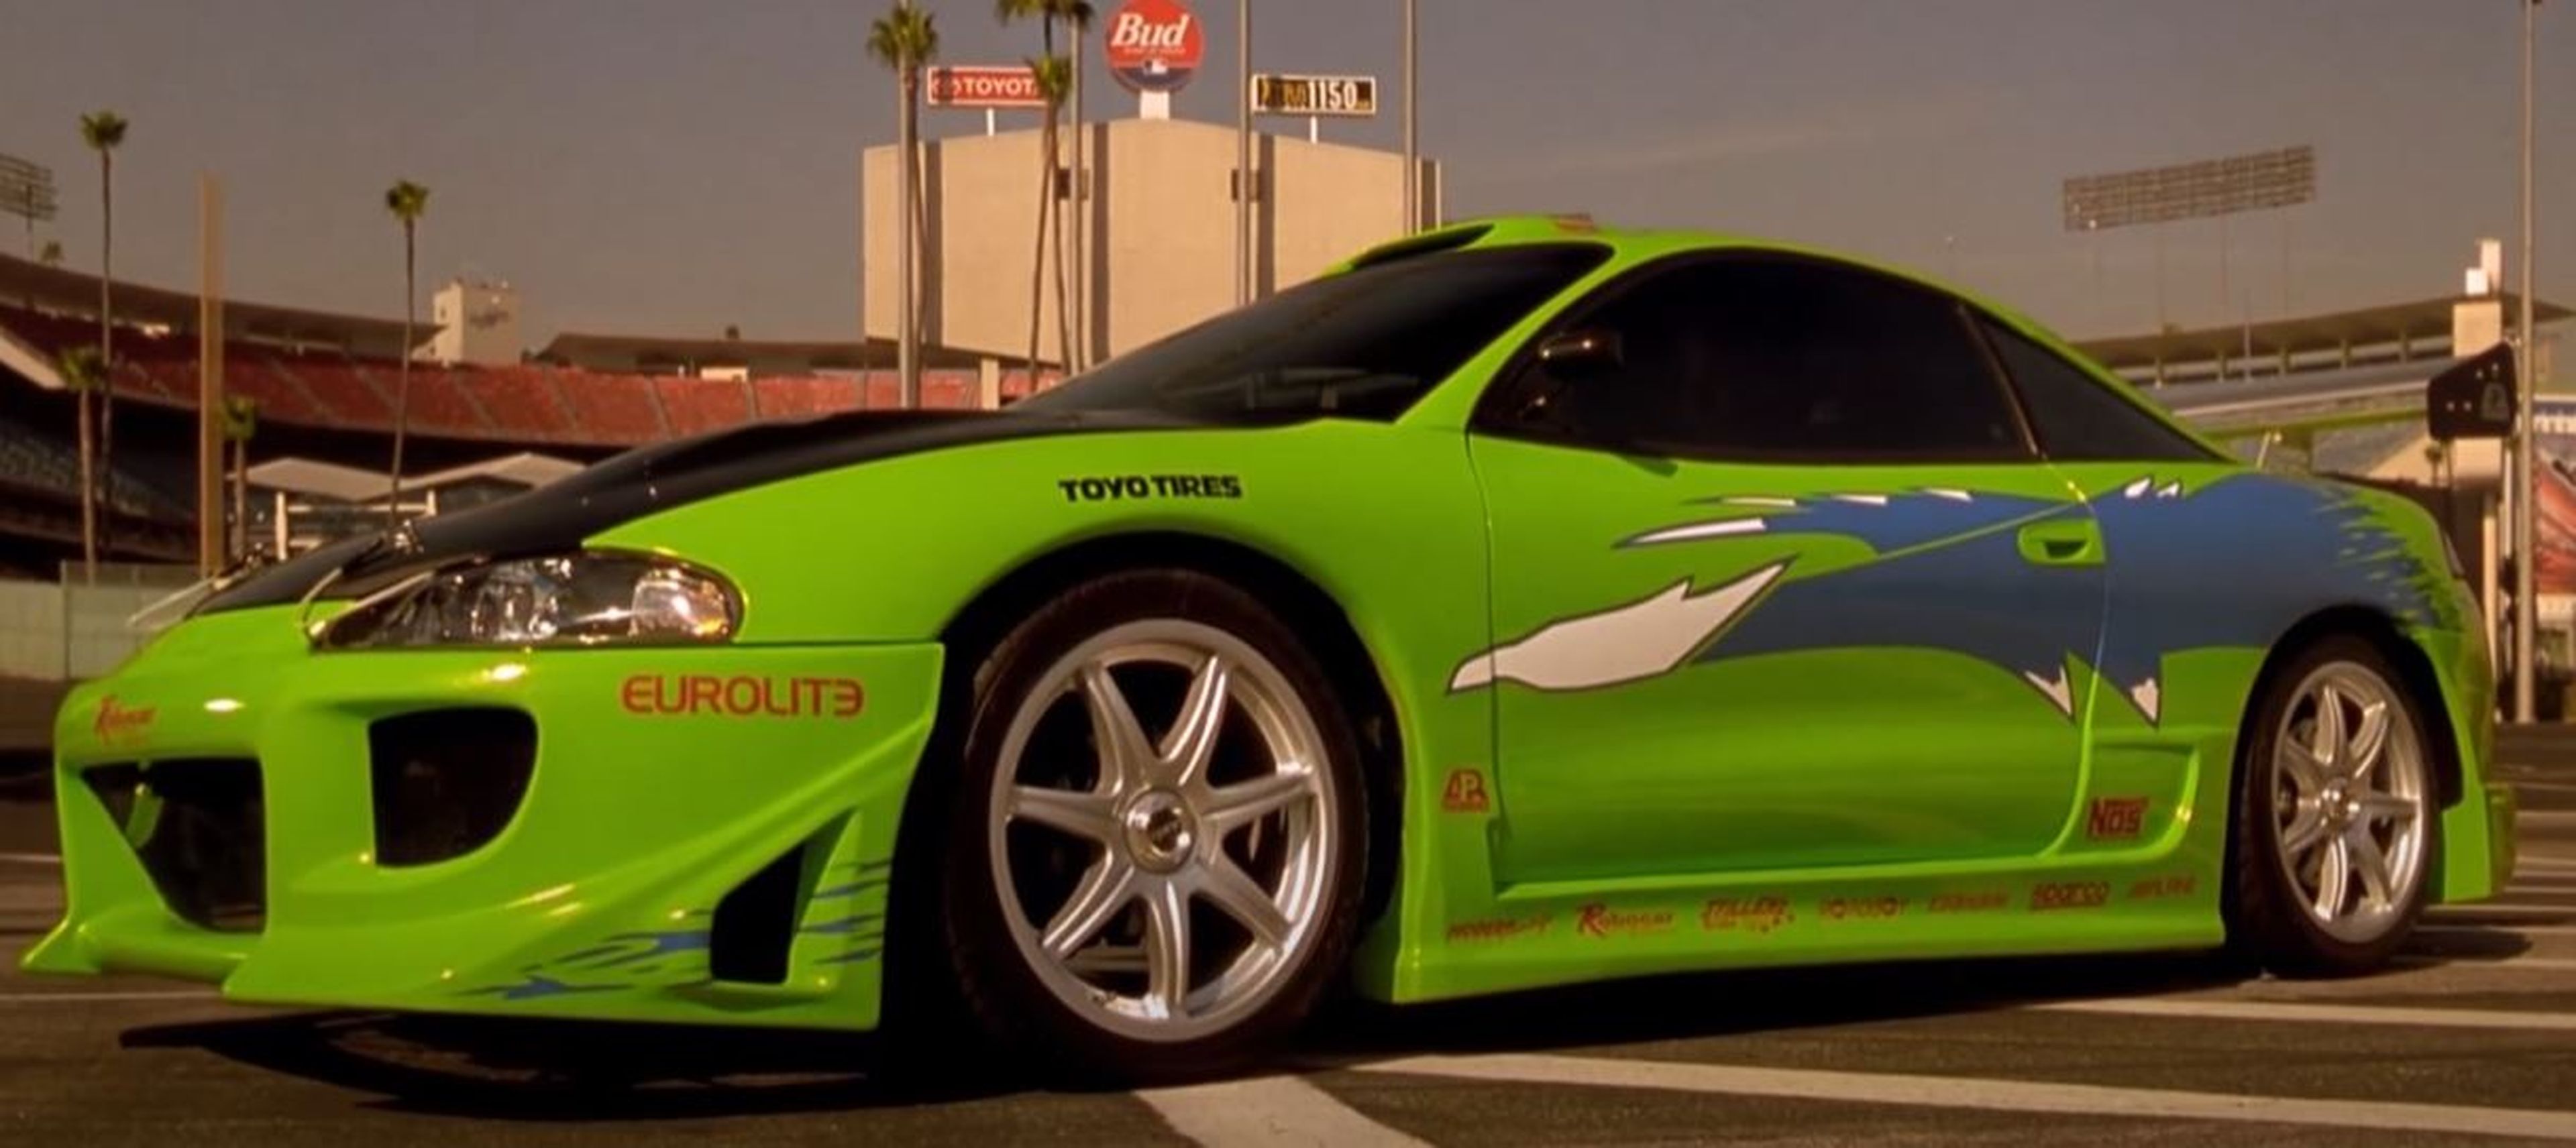 El Mitsubishi Eclipse de Brian O'Conner (Paul Walker) en 'The Fast & the Furious'